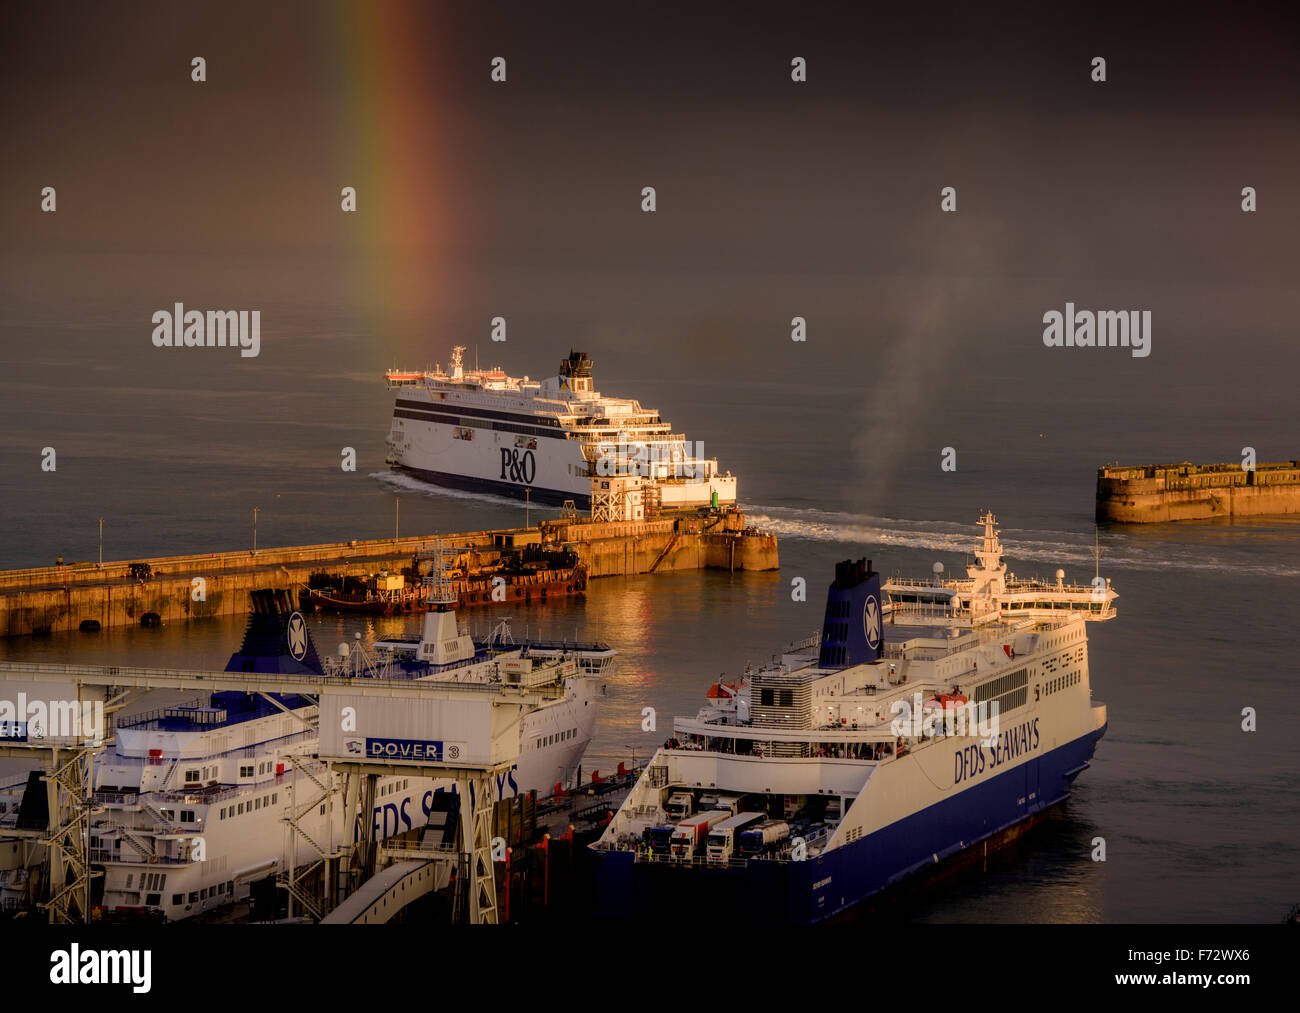 Ein heller Regenbogen am Himmel leuchtet über dem „Spirit of France“, während die P&O-Fähre den Hafen von Dover, Kent, Großbritannien, überfährt. Stockfoto